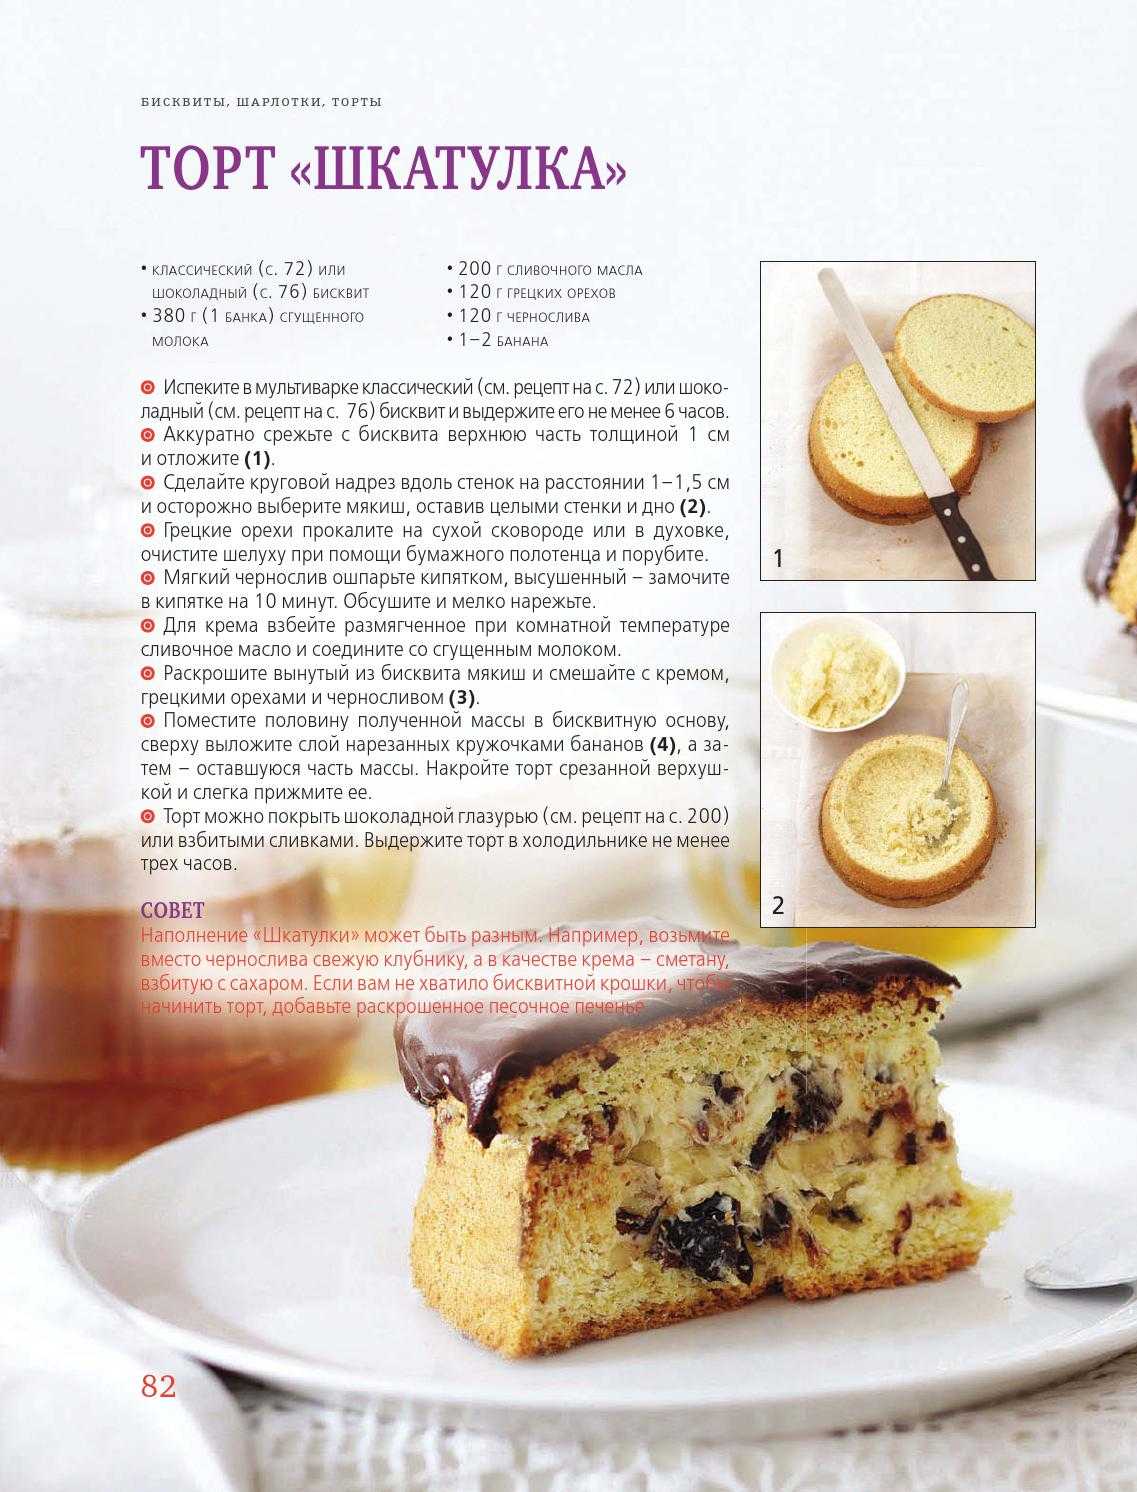 Как приготовить торт для мужа. торт мужу на день рождения :: syl.ru